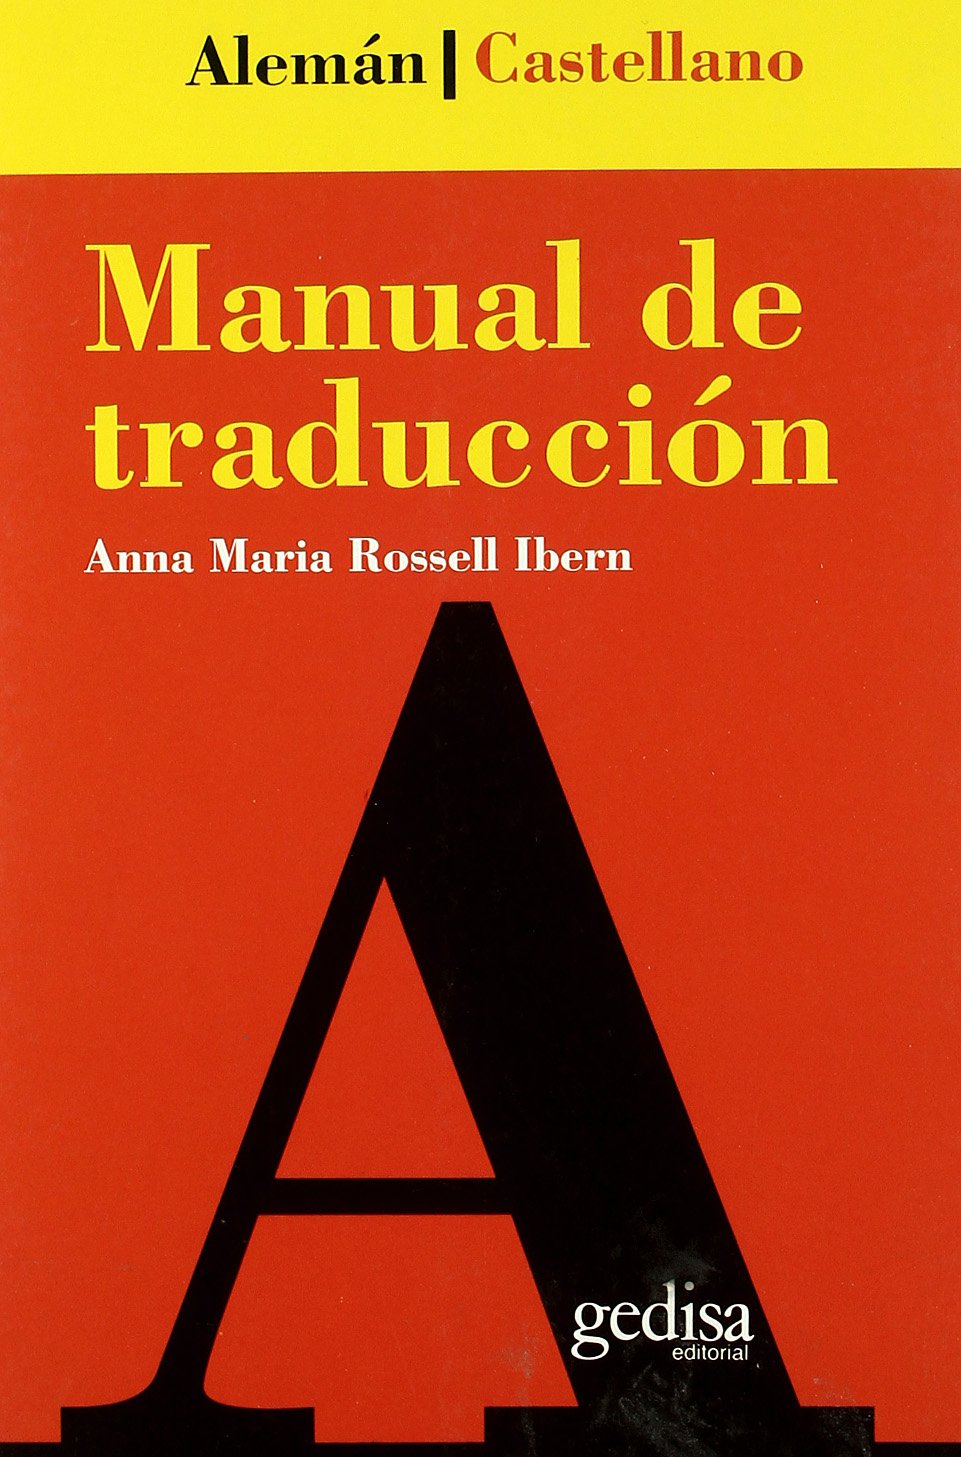 Portada del libro «Manual de traducción (alemán-castellano), de la escritora y filóloga alemana Anna Rossell